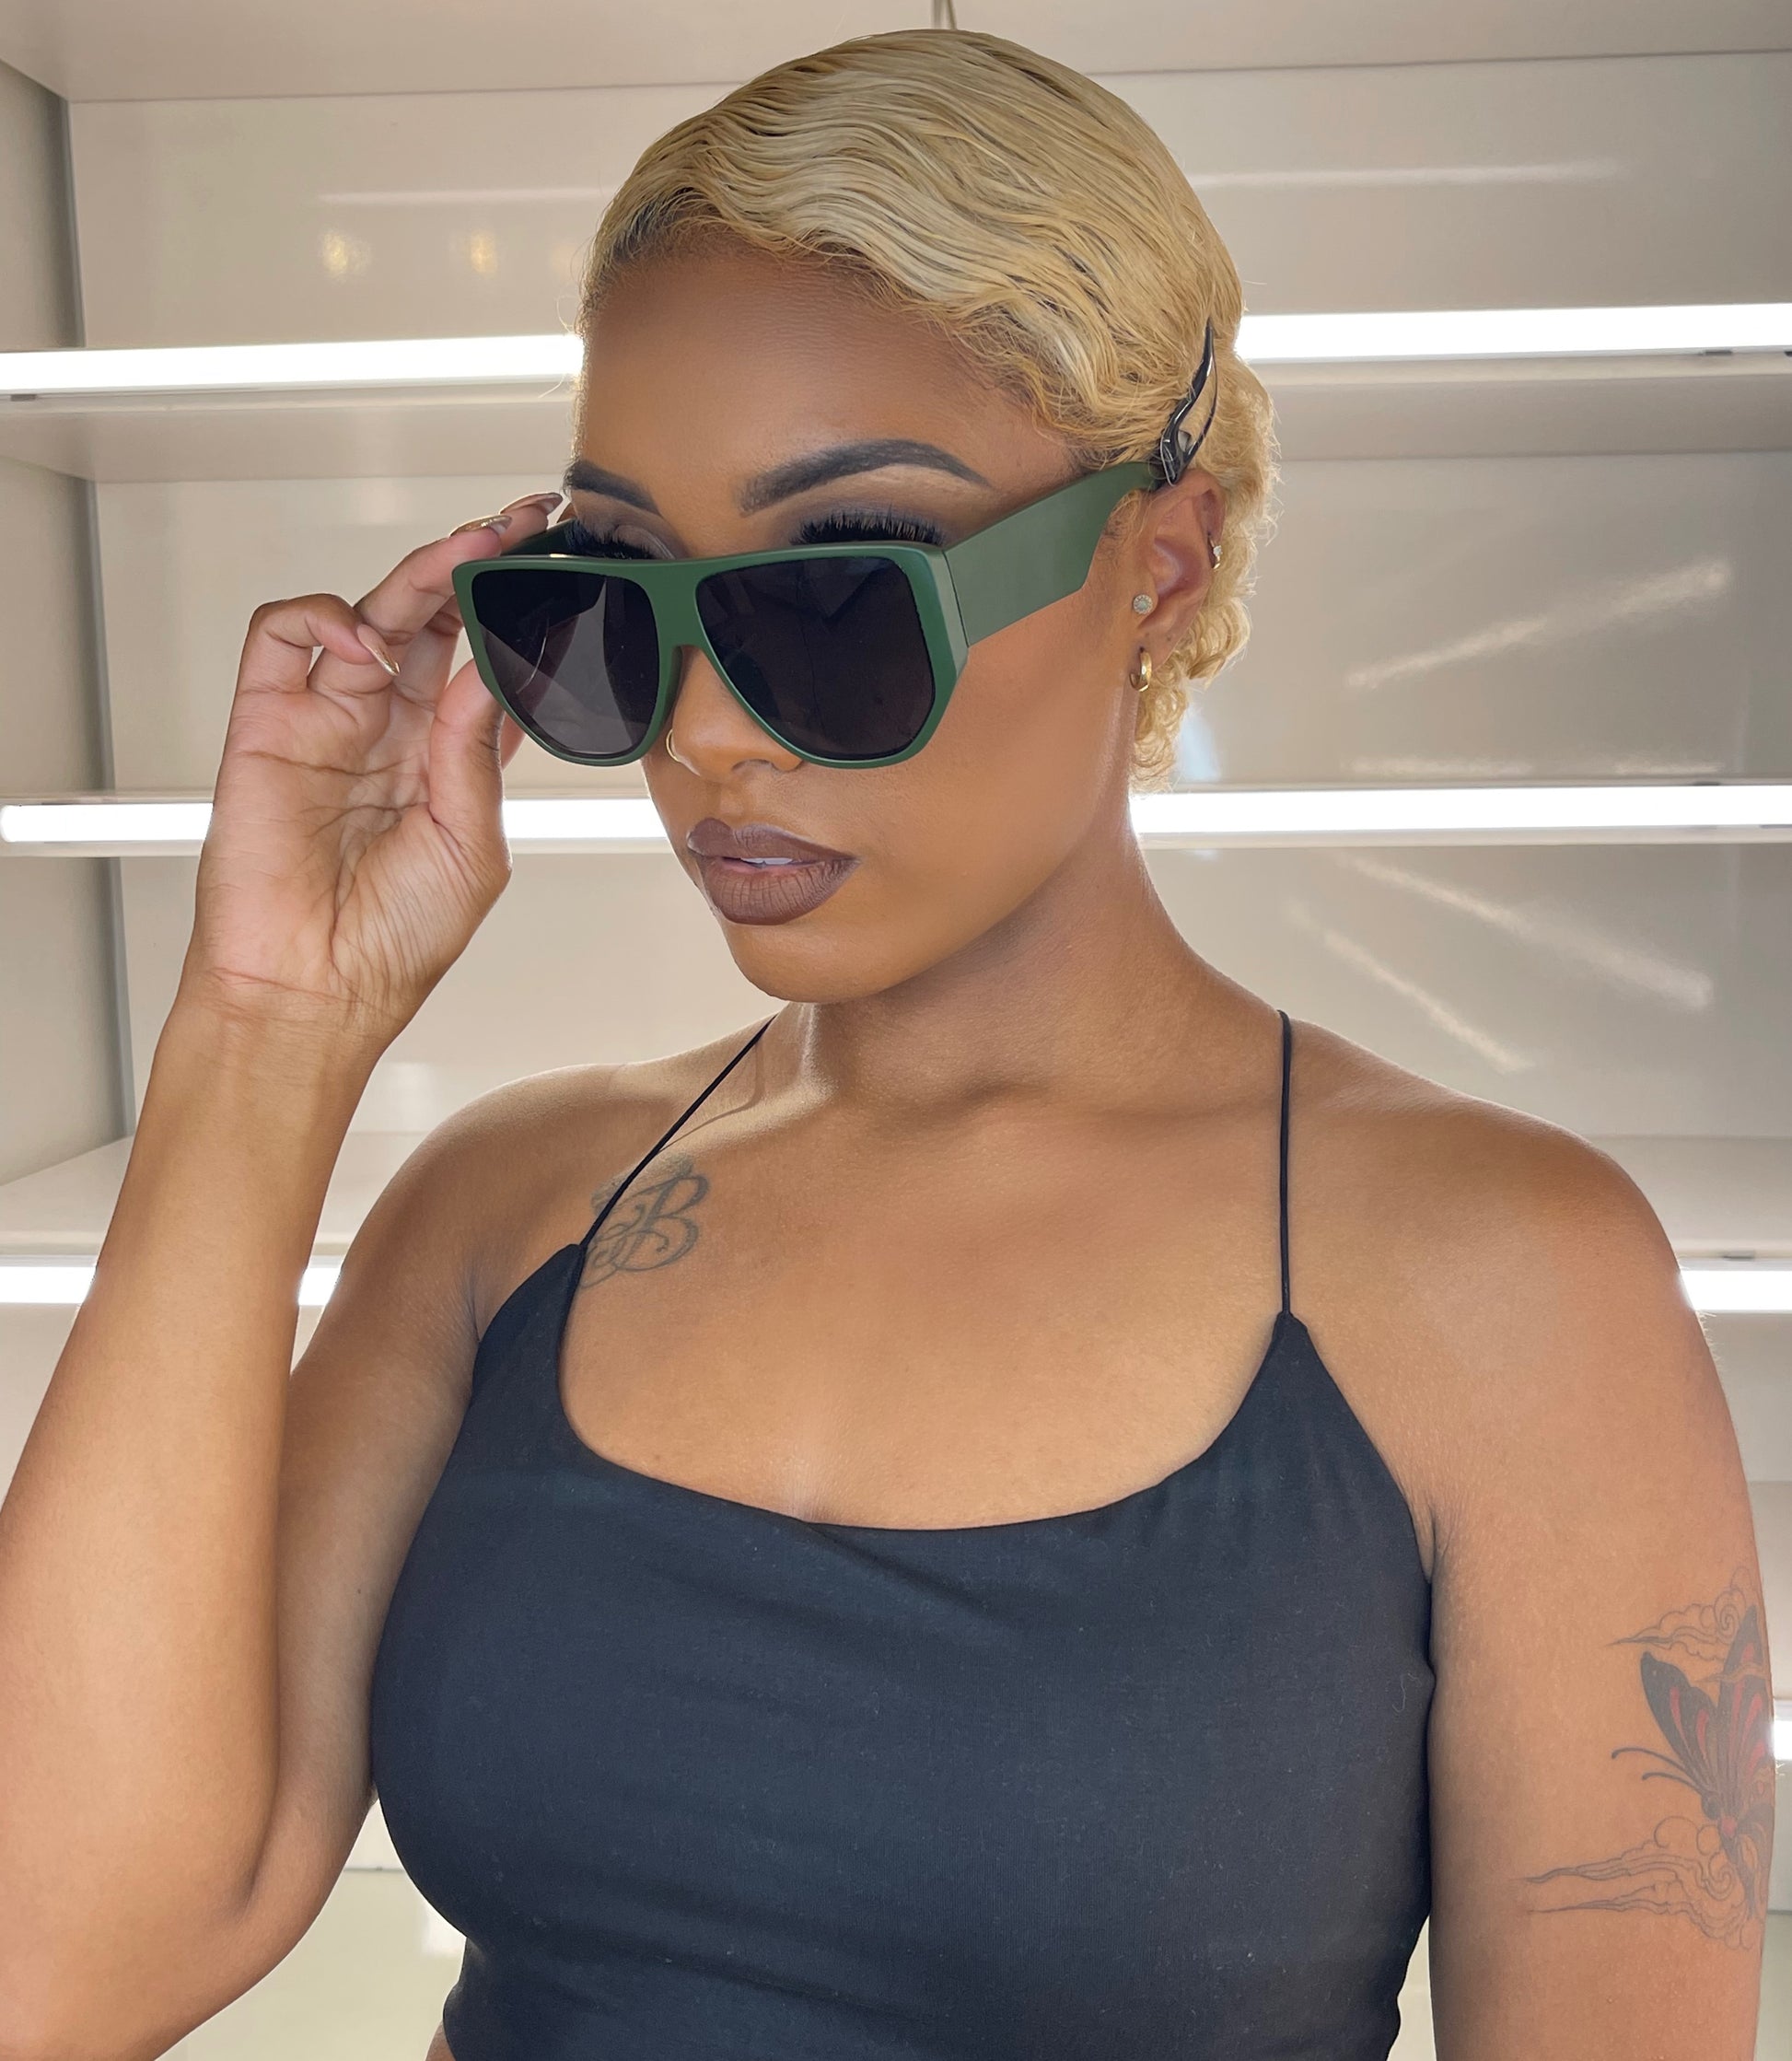 B shades - Monique Fashion Accessories